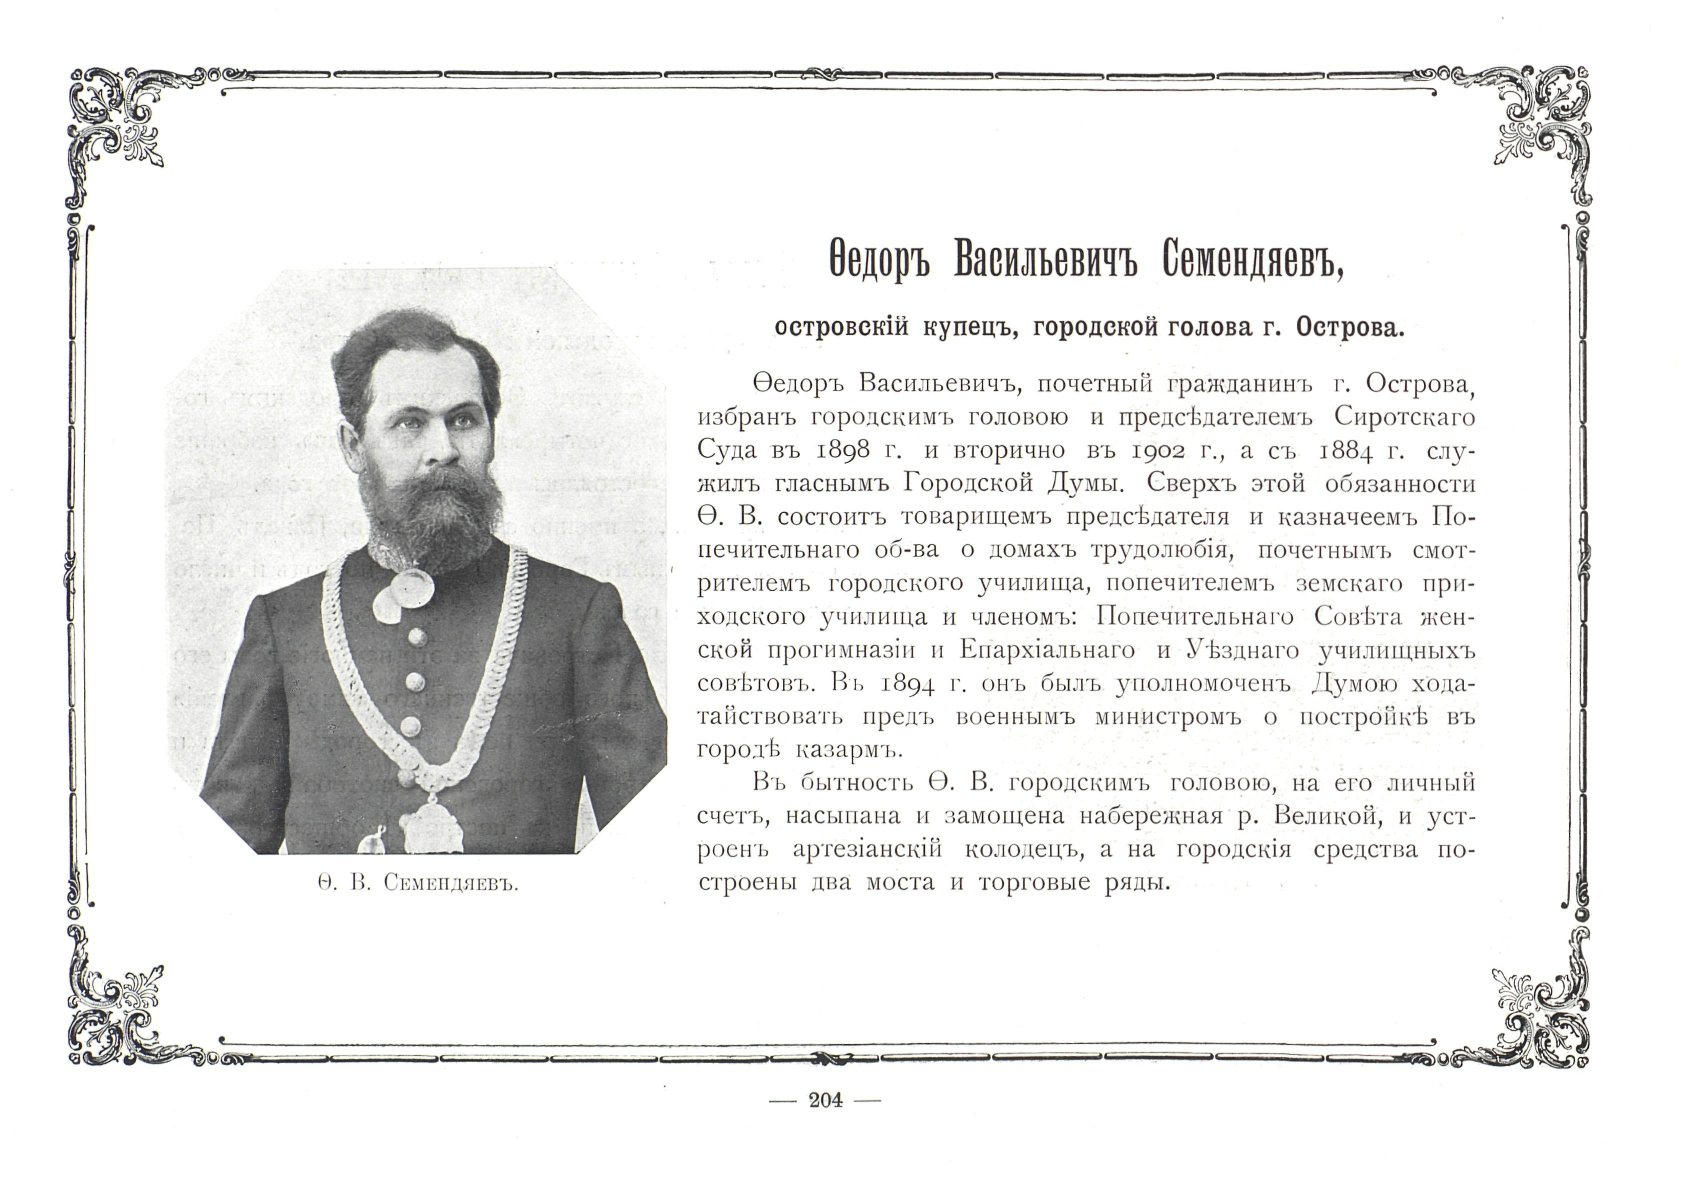 1903 г в россии